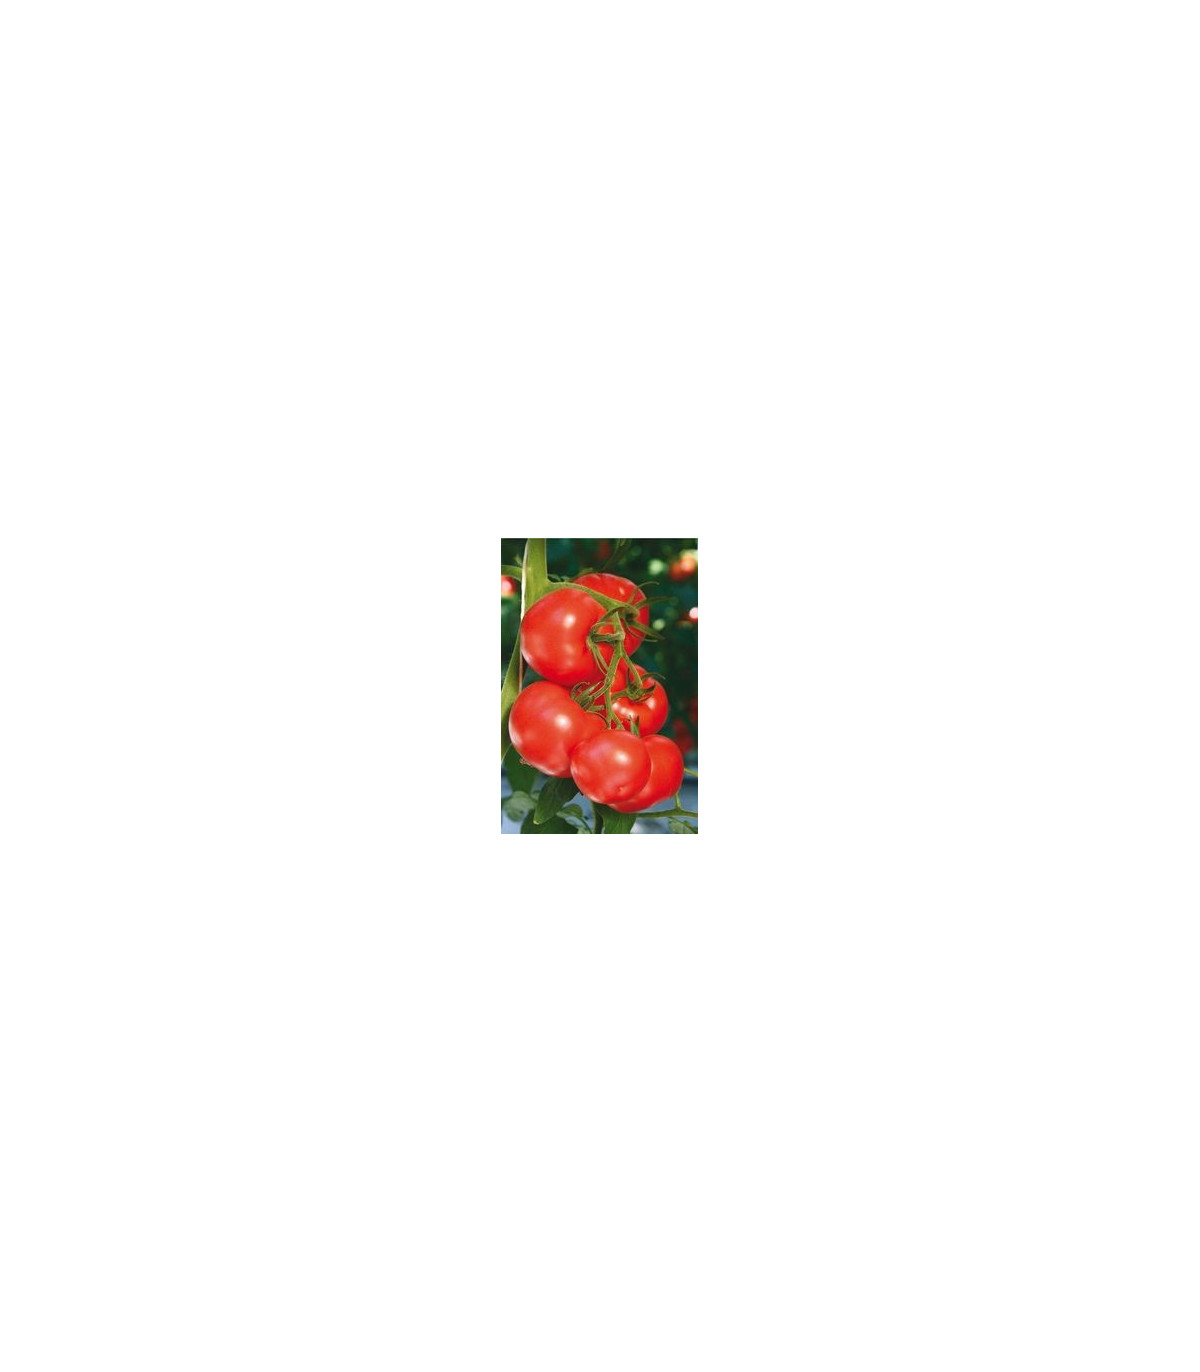 Rajčiak kolíkový hybridný Virginia F1 - semená rajčiaka - 5 ks